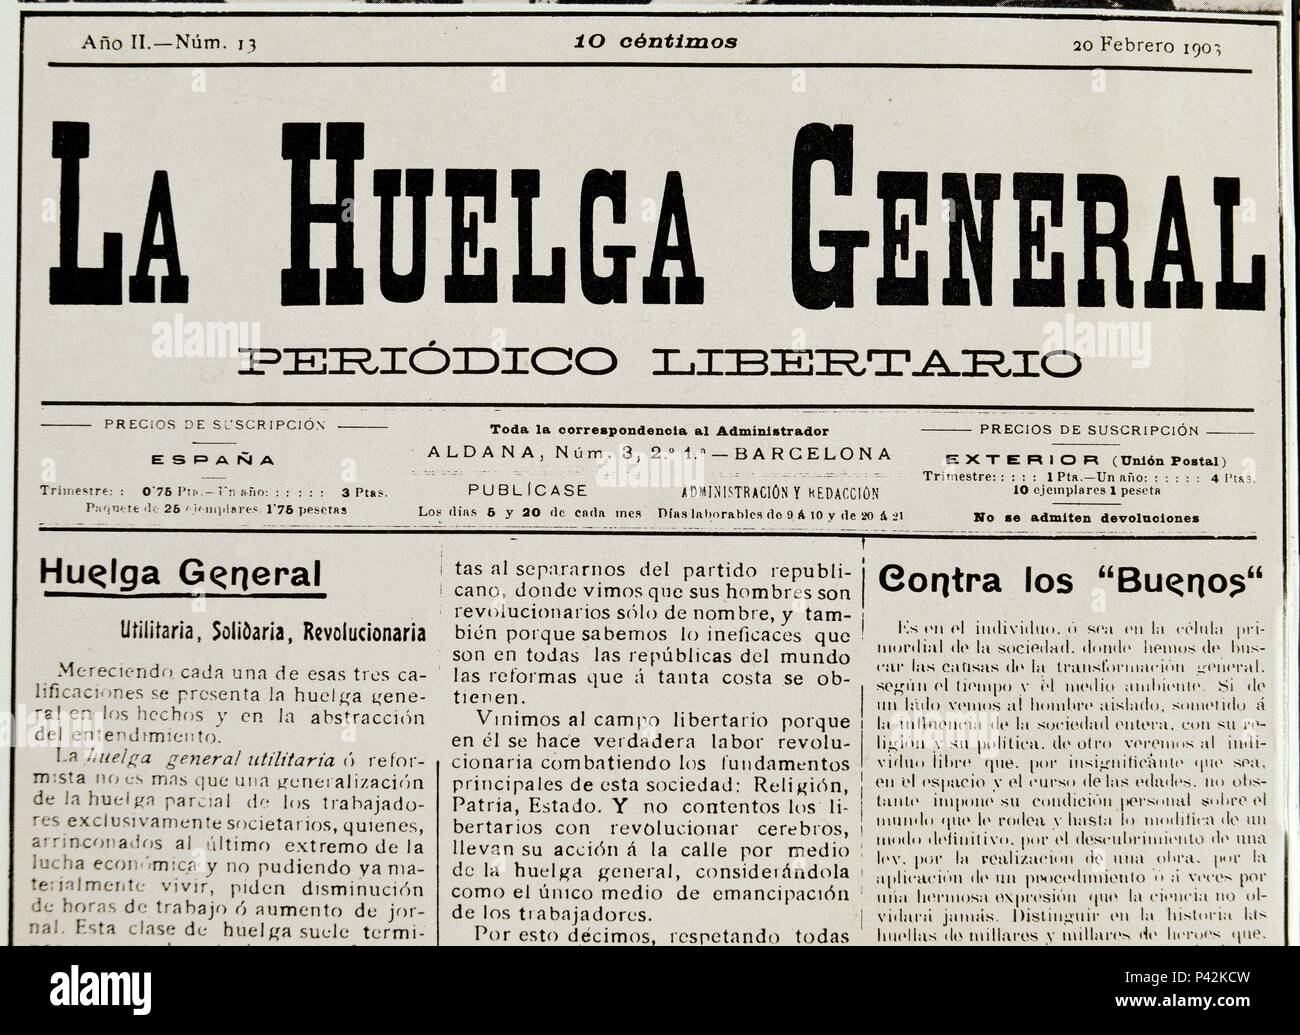 HªCATALUÑA-PERIODICO-LA HUELGA GENERAL-20-2-1903-PORTADA. Location: BIBLIOTECA NACIONAL-COLECCION, MADRID. Stock Photo